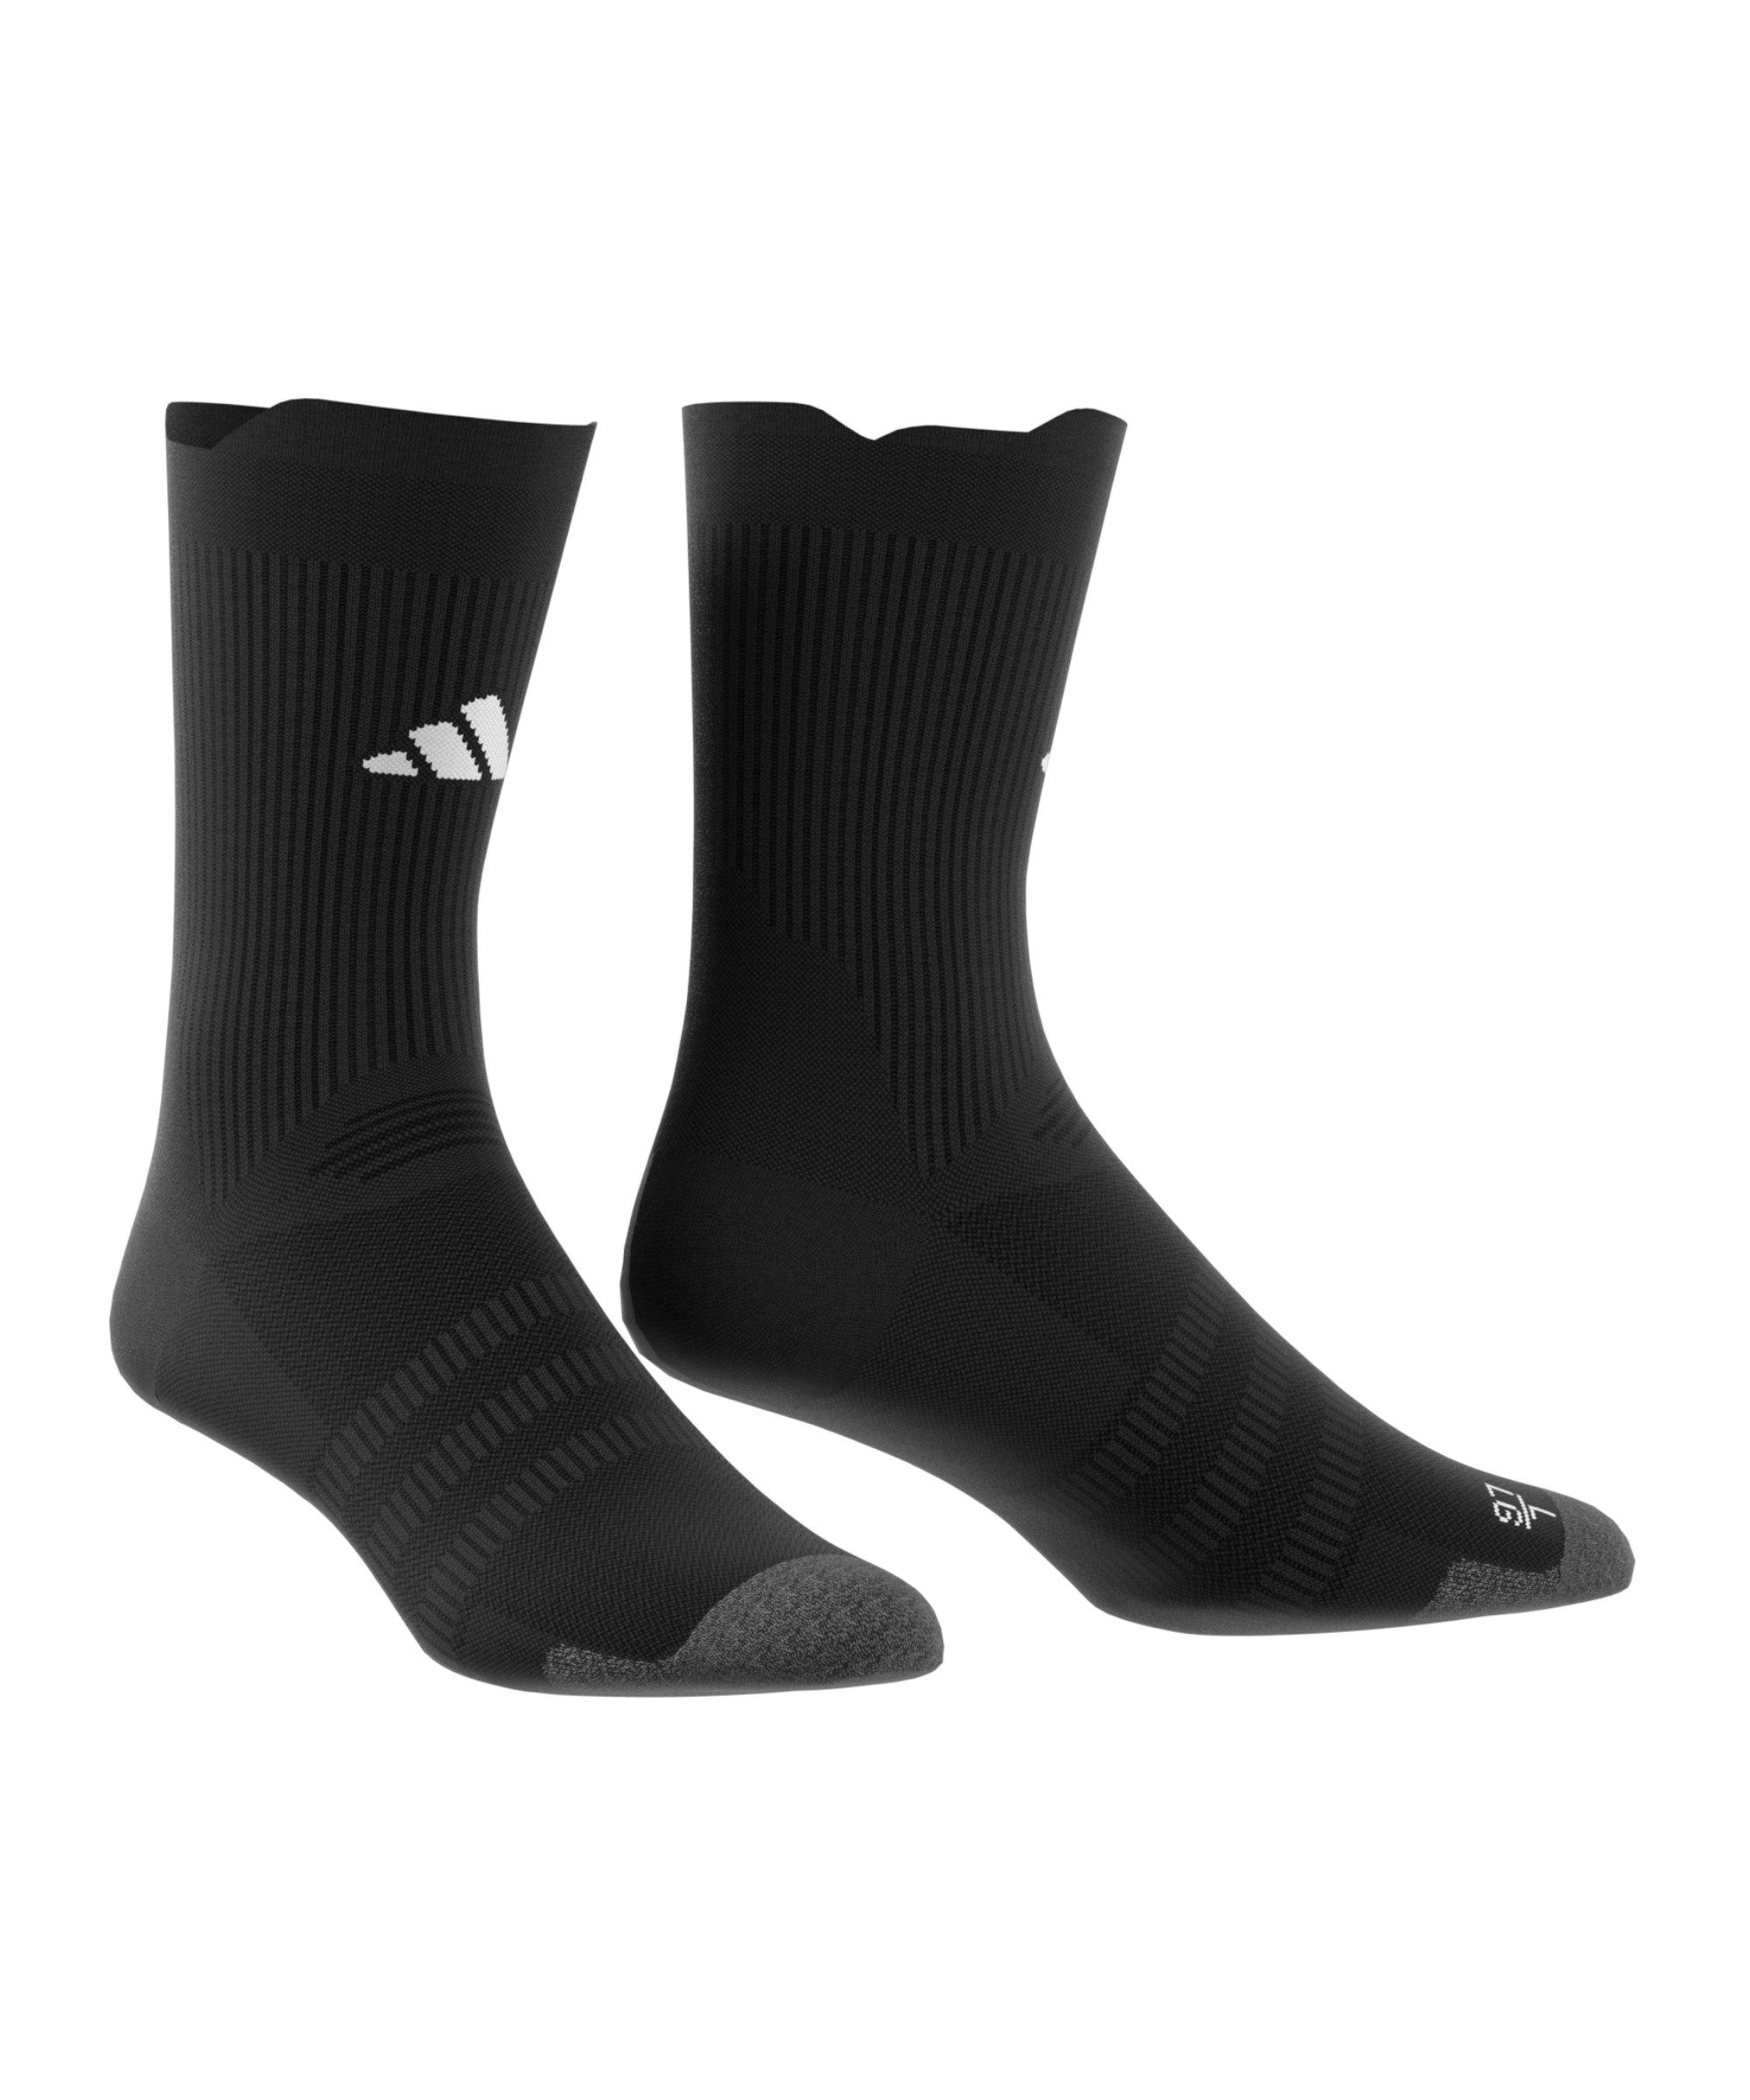 Sportsocken adidas Performance Light schwarzweiss default Socken